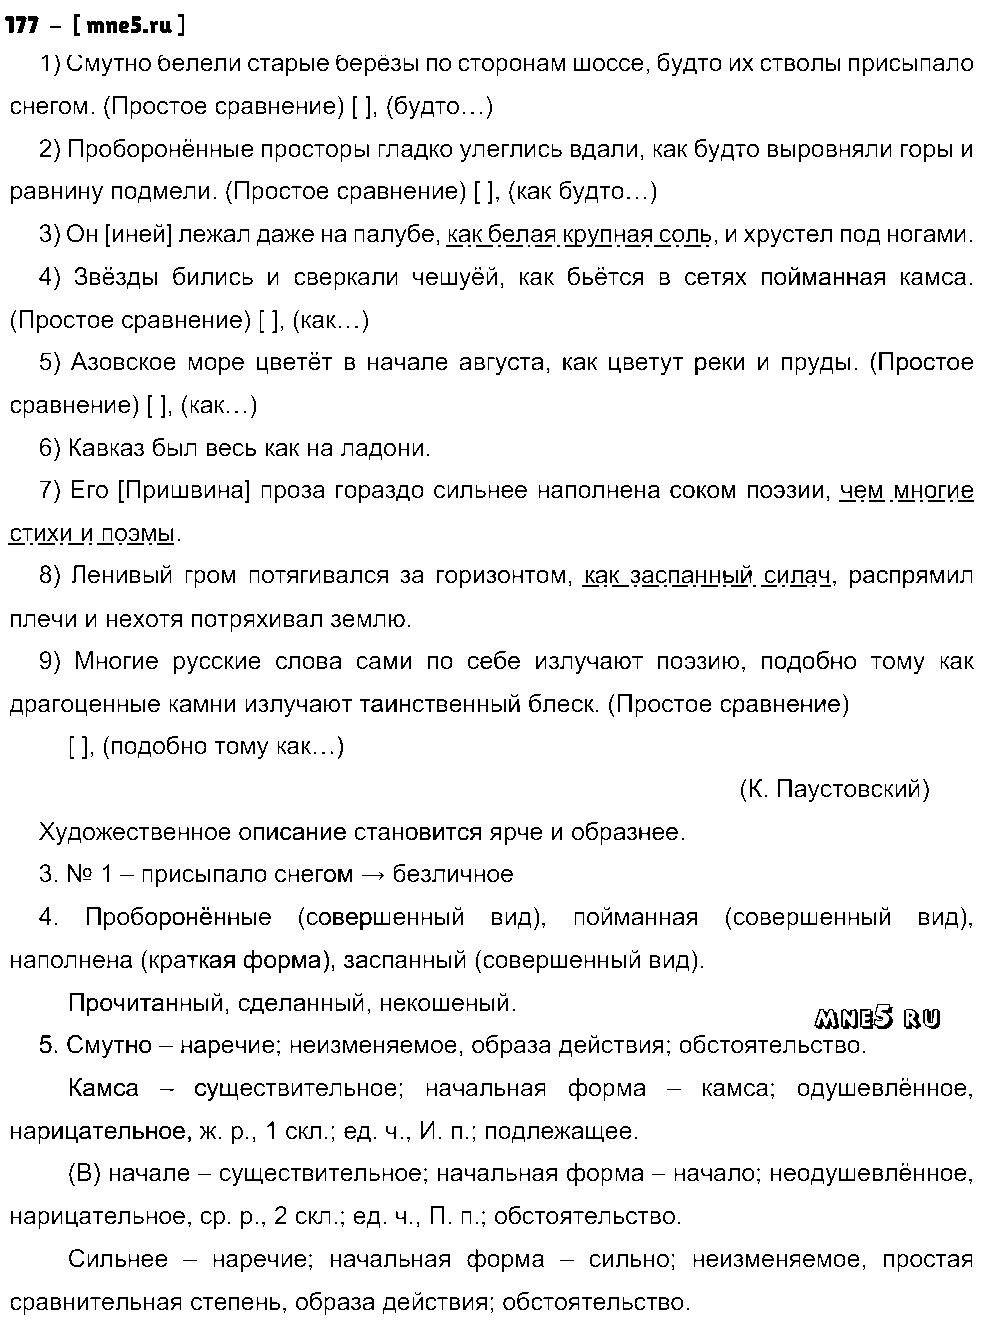 ГДЗ Русский язык 9 класс - 177